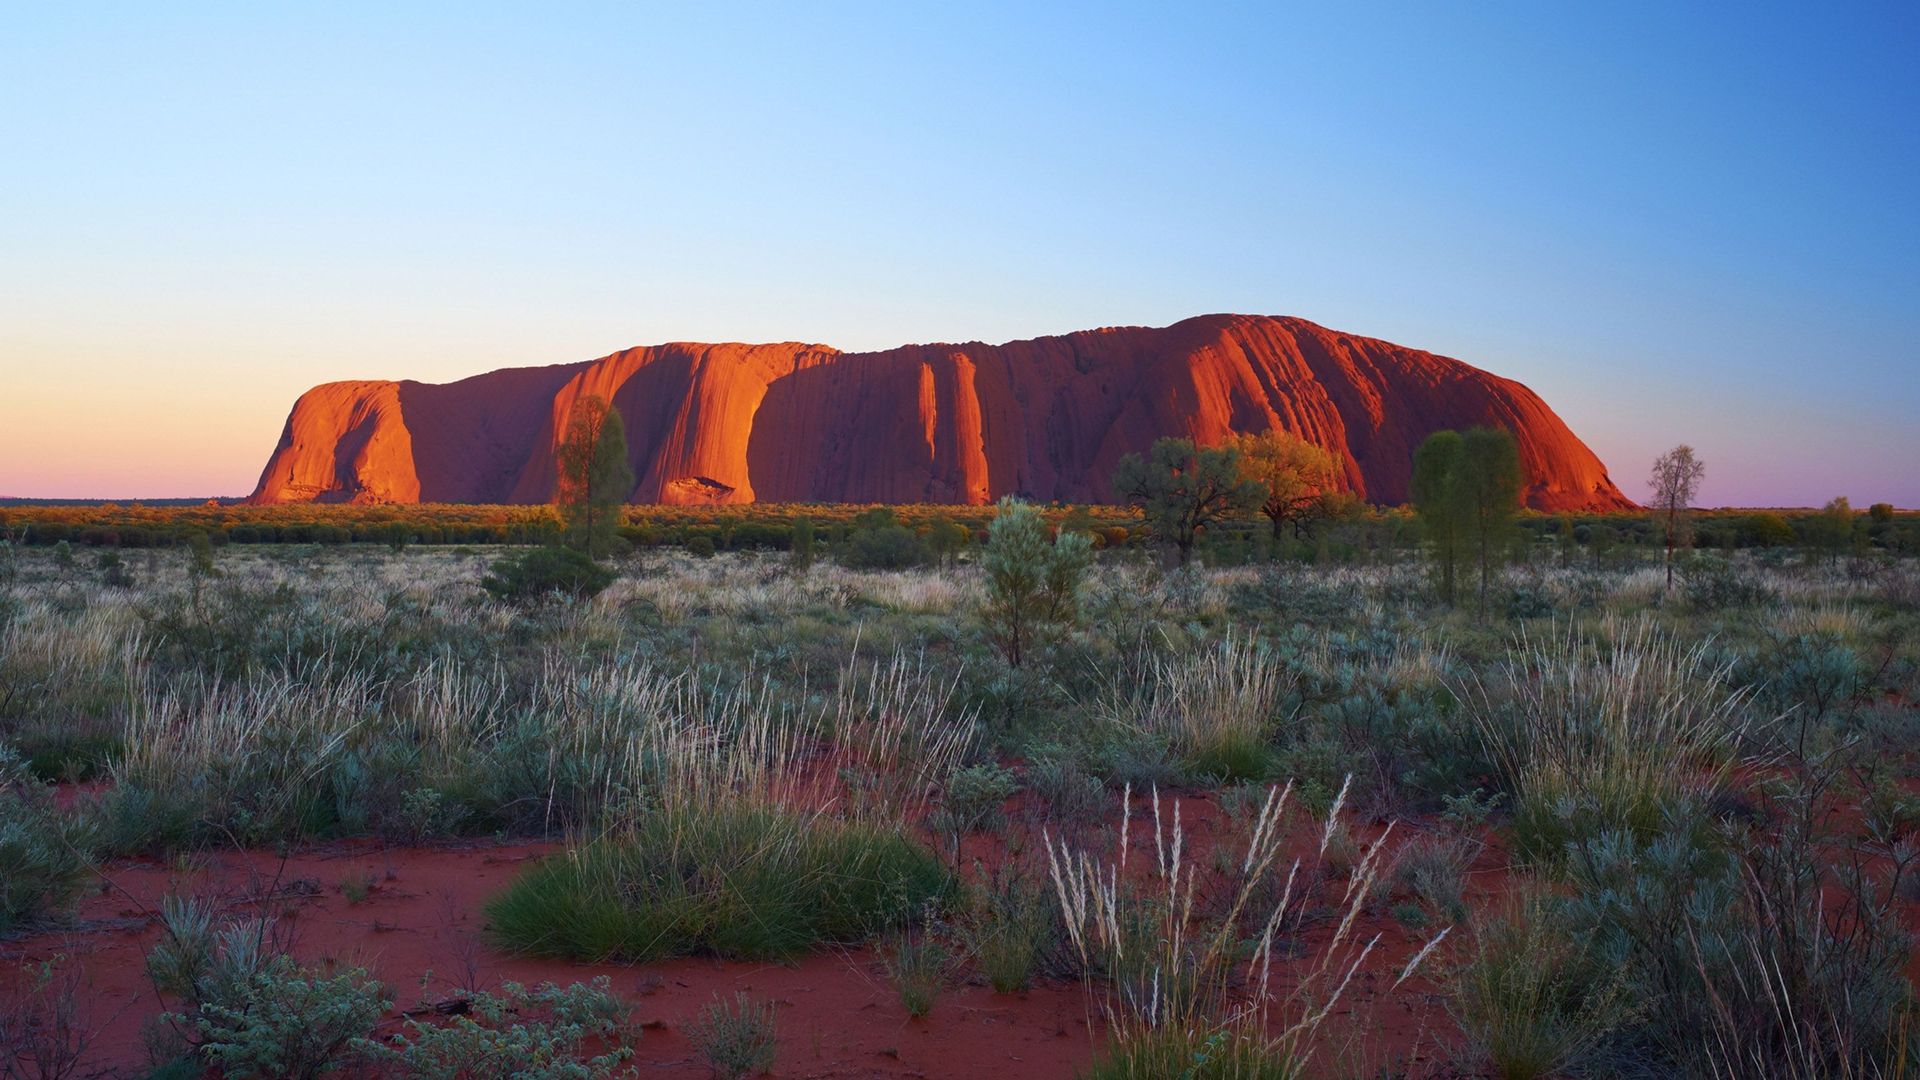 Des centaines de touristes ont afflué une dernière fois vendredi sur le site d'Uluru, célèbre formation rocheuse au coeur du désert australien, à la veille de l'interdiction de son ascension.